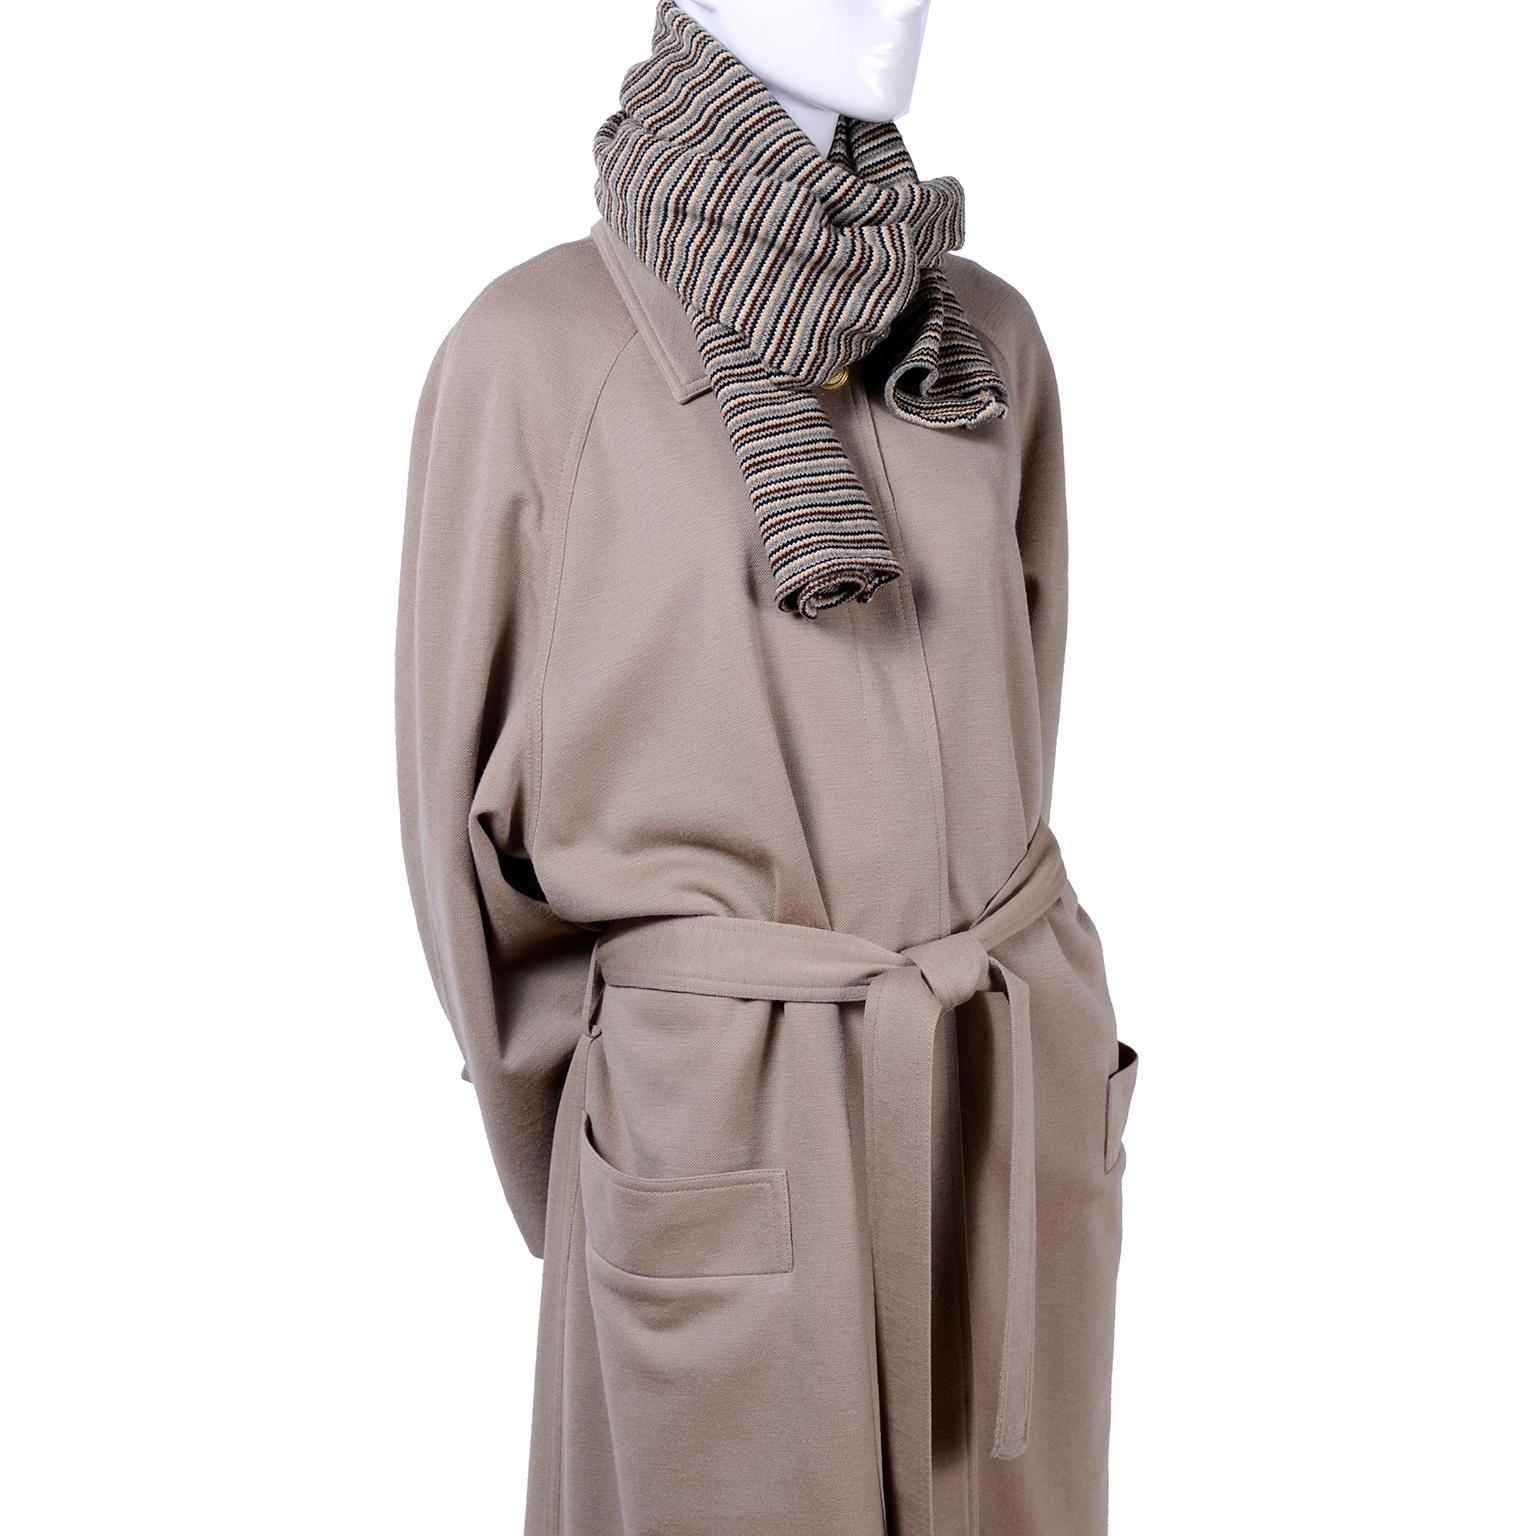 Sonia Rykiel Paris Vintage Beige Wool Trousers Coat and Scarf Pants Suit  For Sale 7